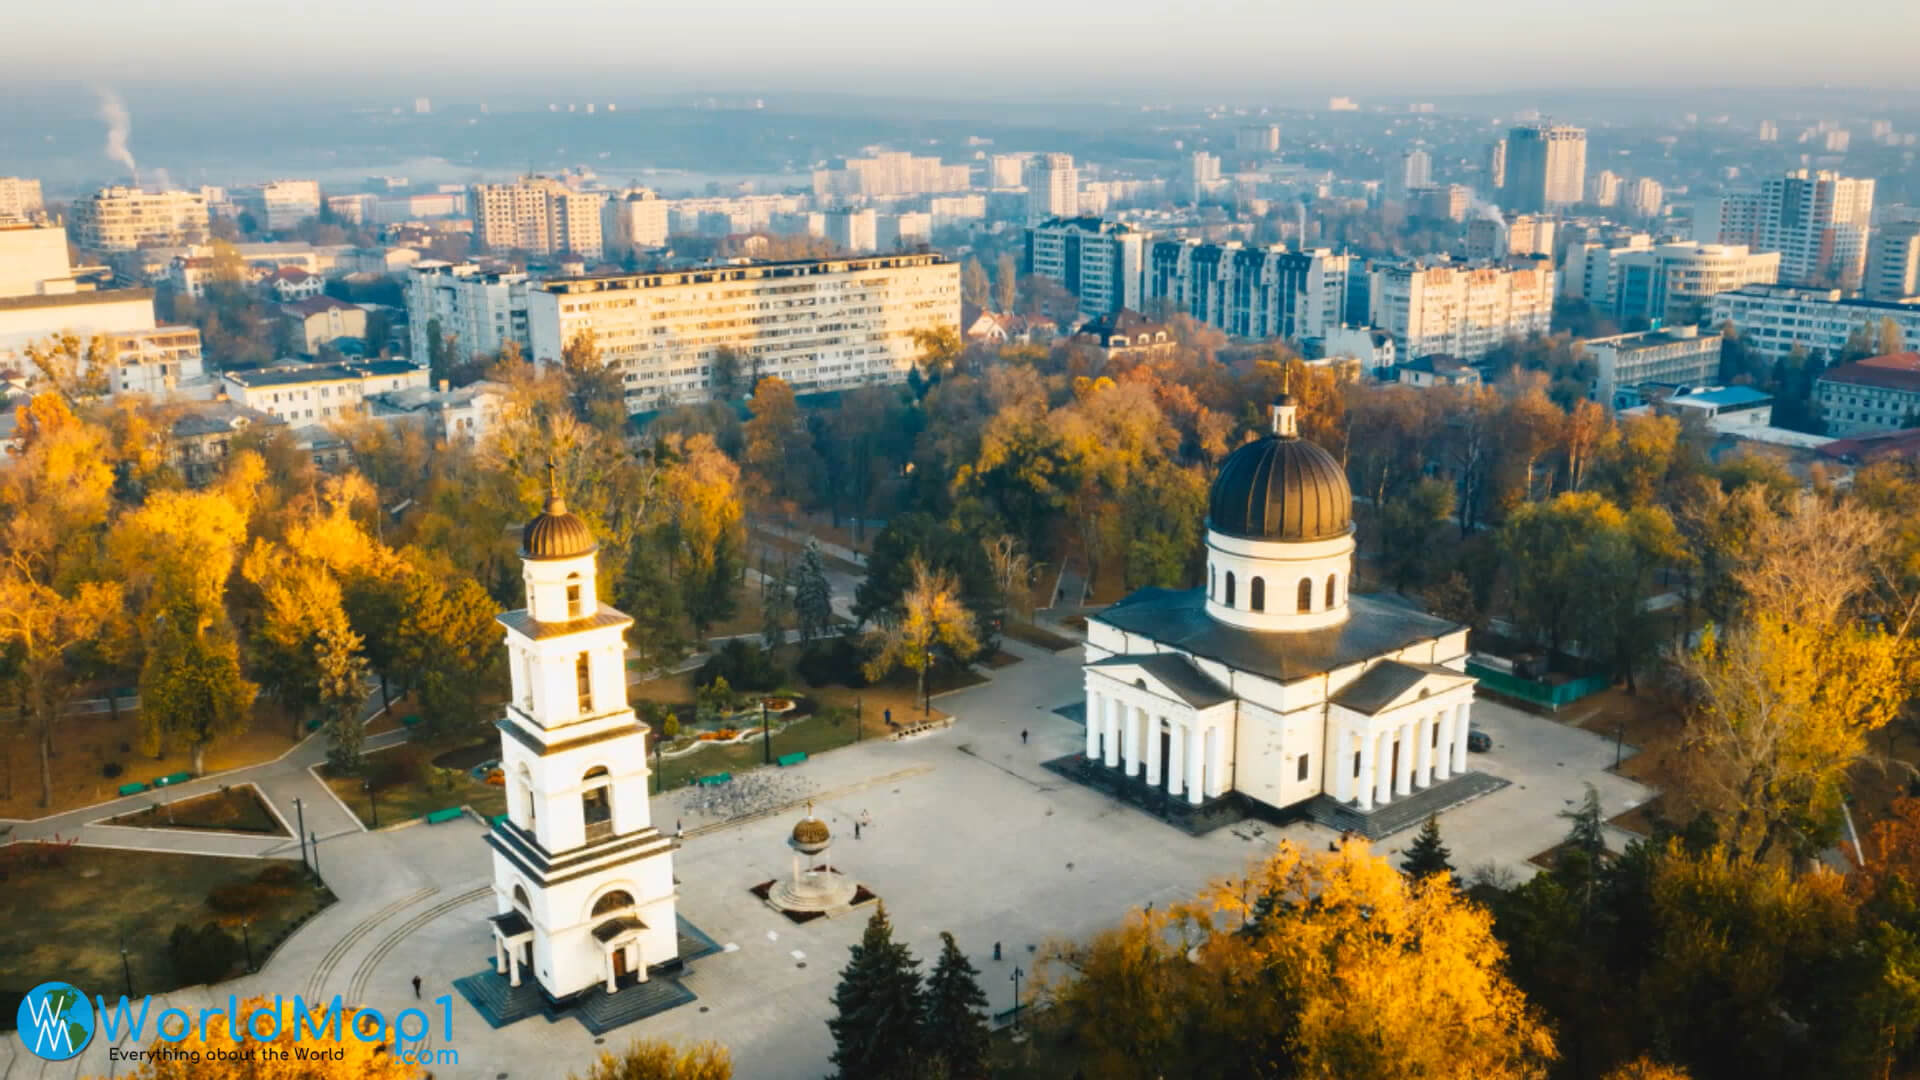 Chisinau City Center in Moldova